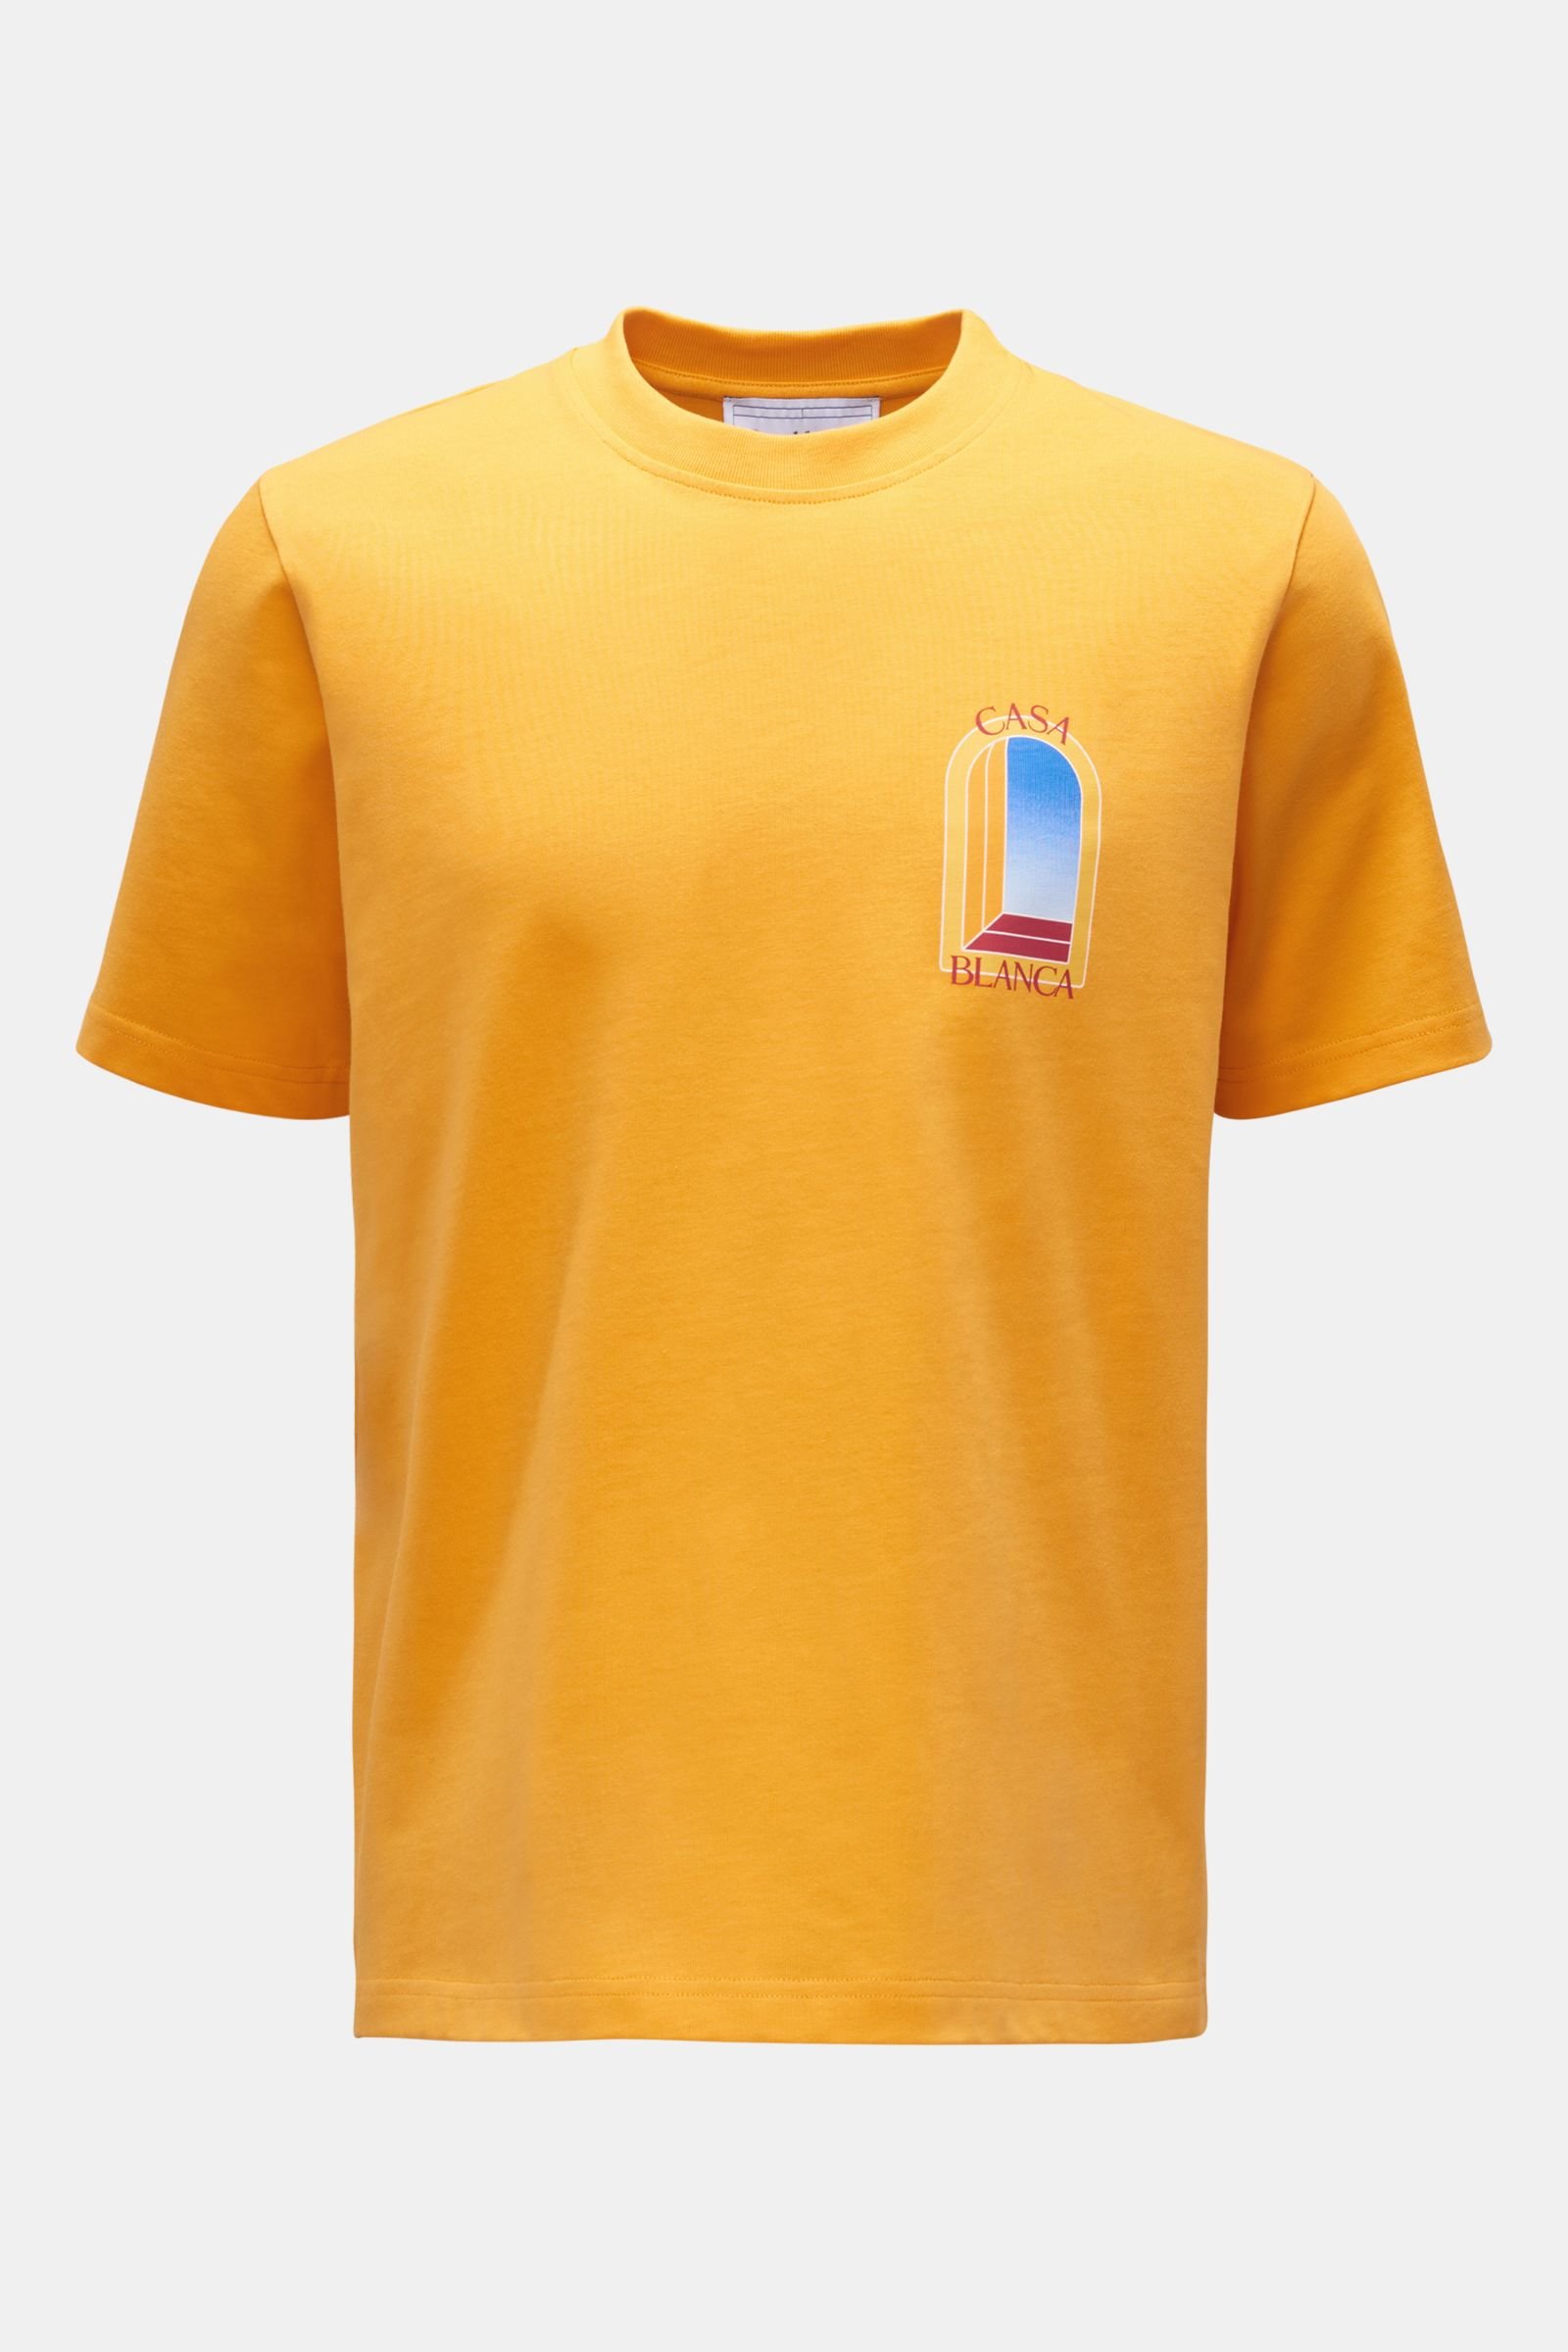 Crew neck T-shirt 'L' Arche De Jour' yellow